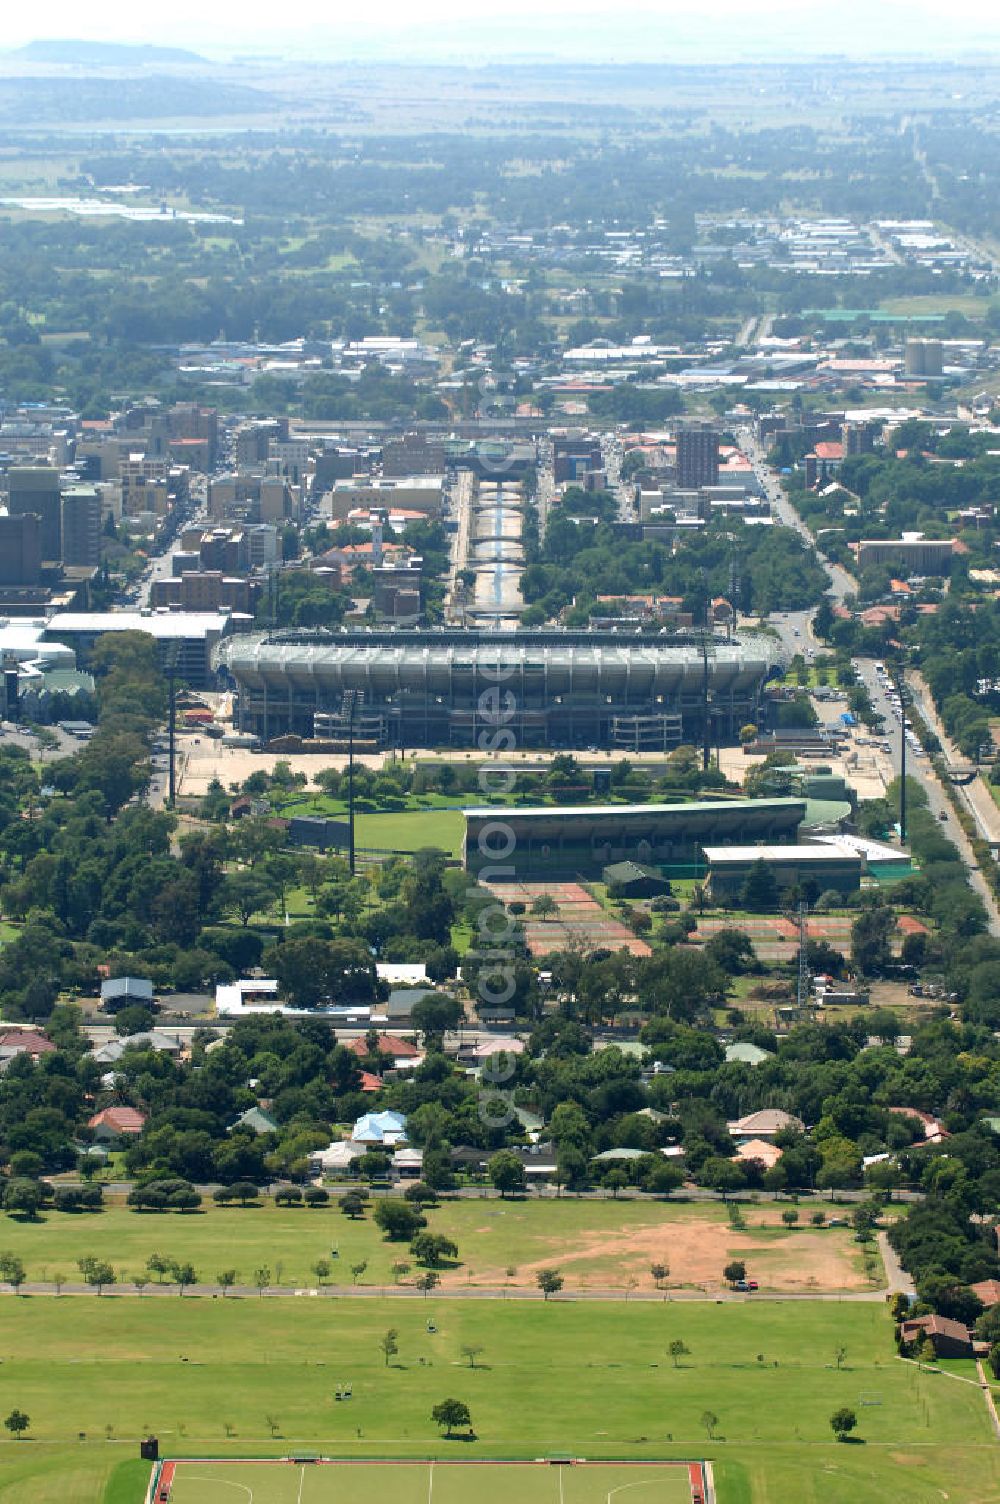 Aerial image Bloemfontein - Blick auf das Free State Stadion im Zentrum von Bloemfontein in Südafrika vor der Fußball-Weltmeisterschaft. View of the Free State Stadium in Bloemfontein in South Africa for the FIFA World Cup 2010.